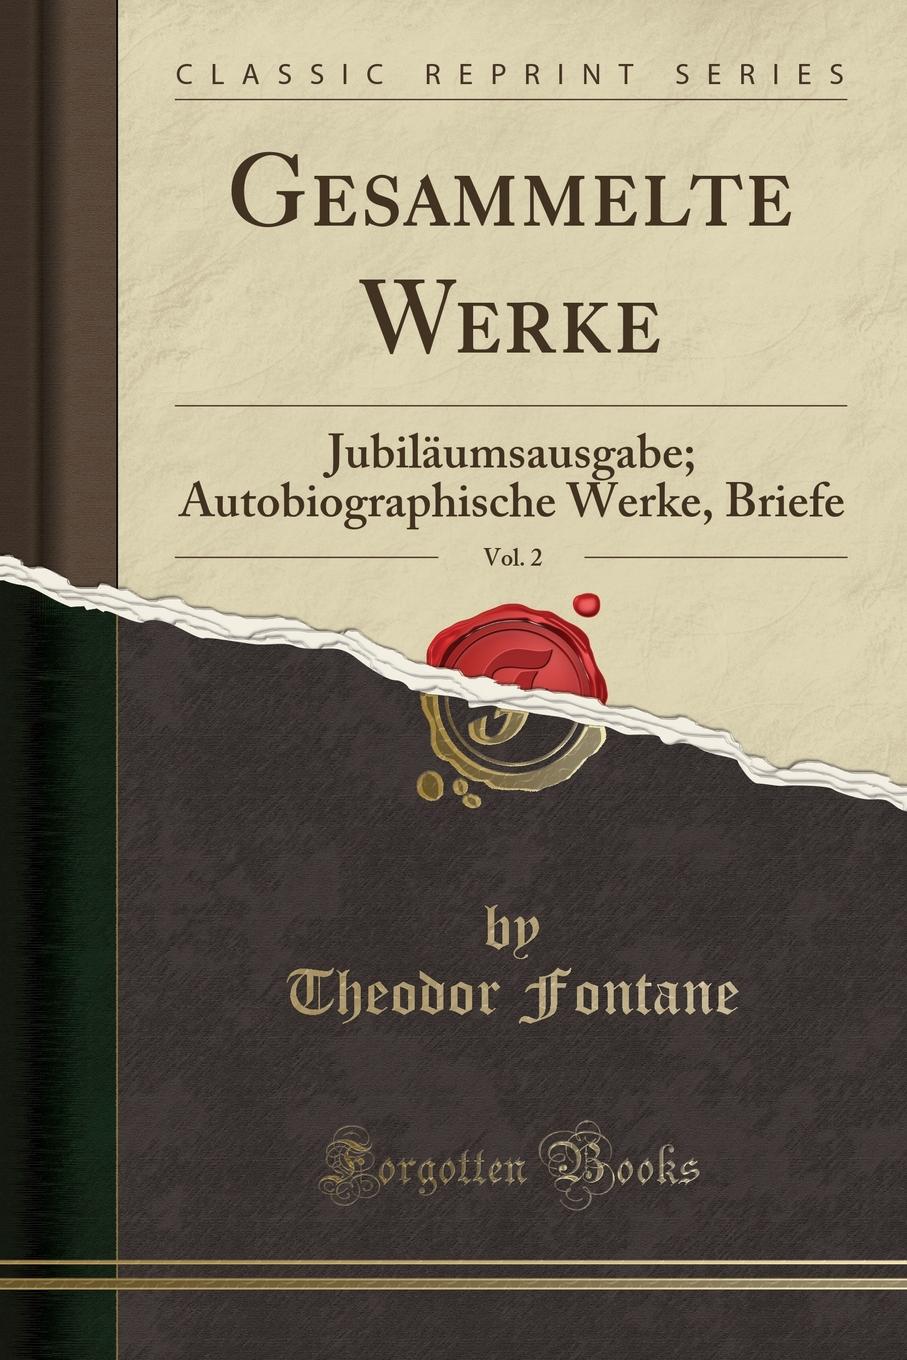 Gesammelte Werke, Vol. 2. Jubilaumsausgabe; Autobiographische Werke, Briefe (Classic Reprint)